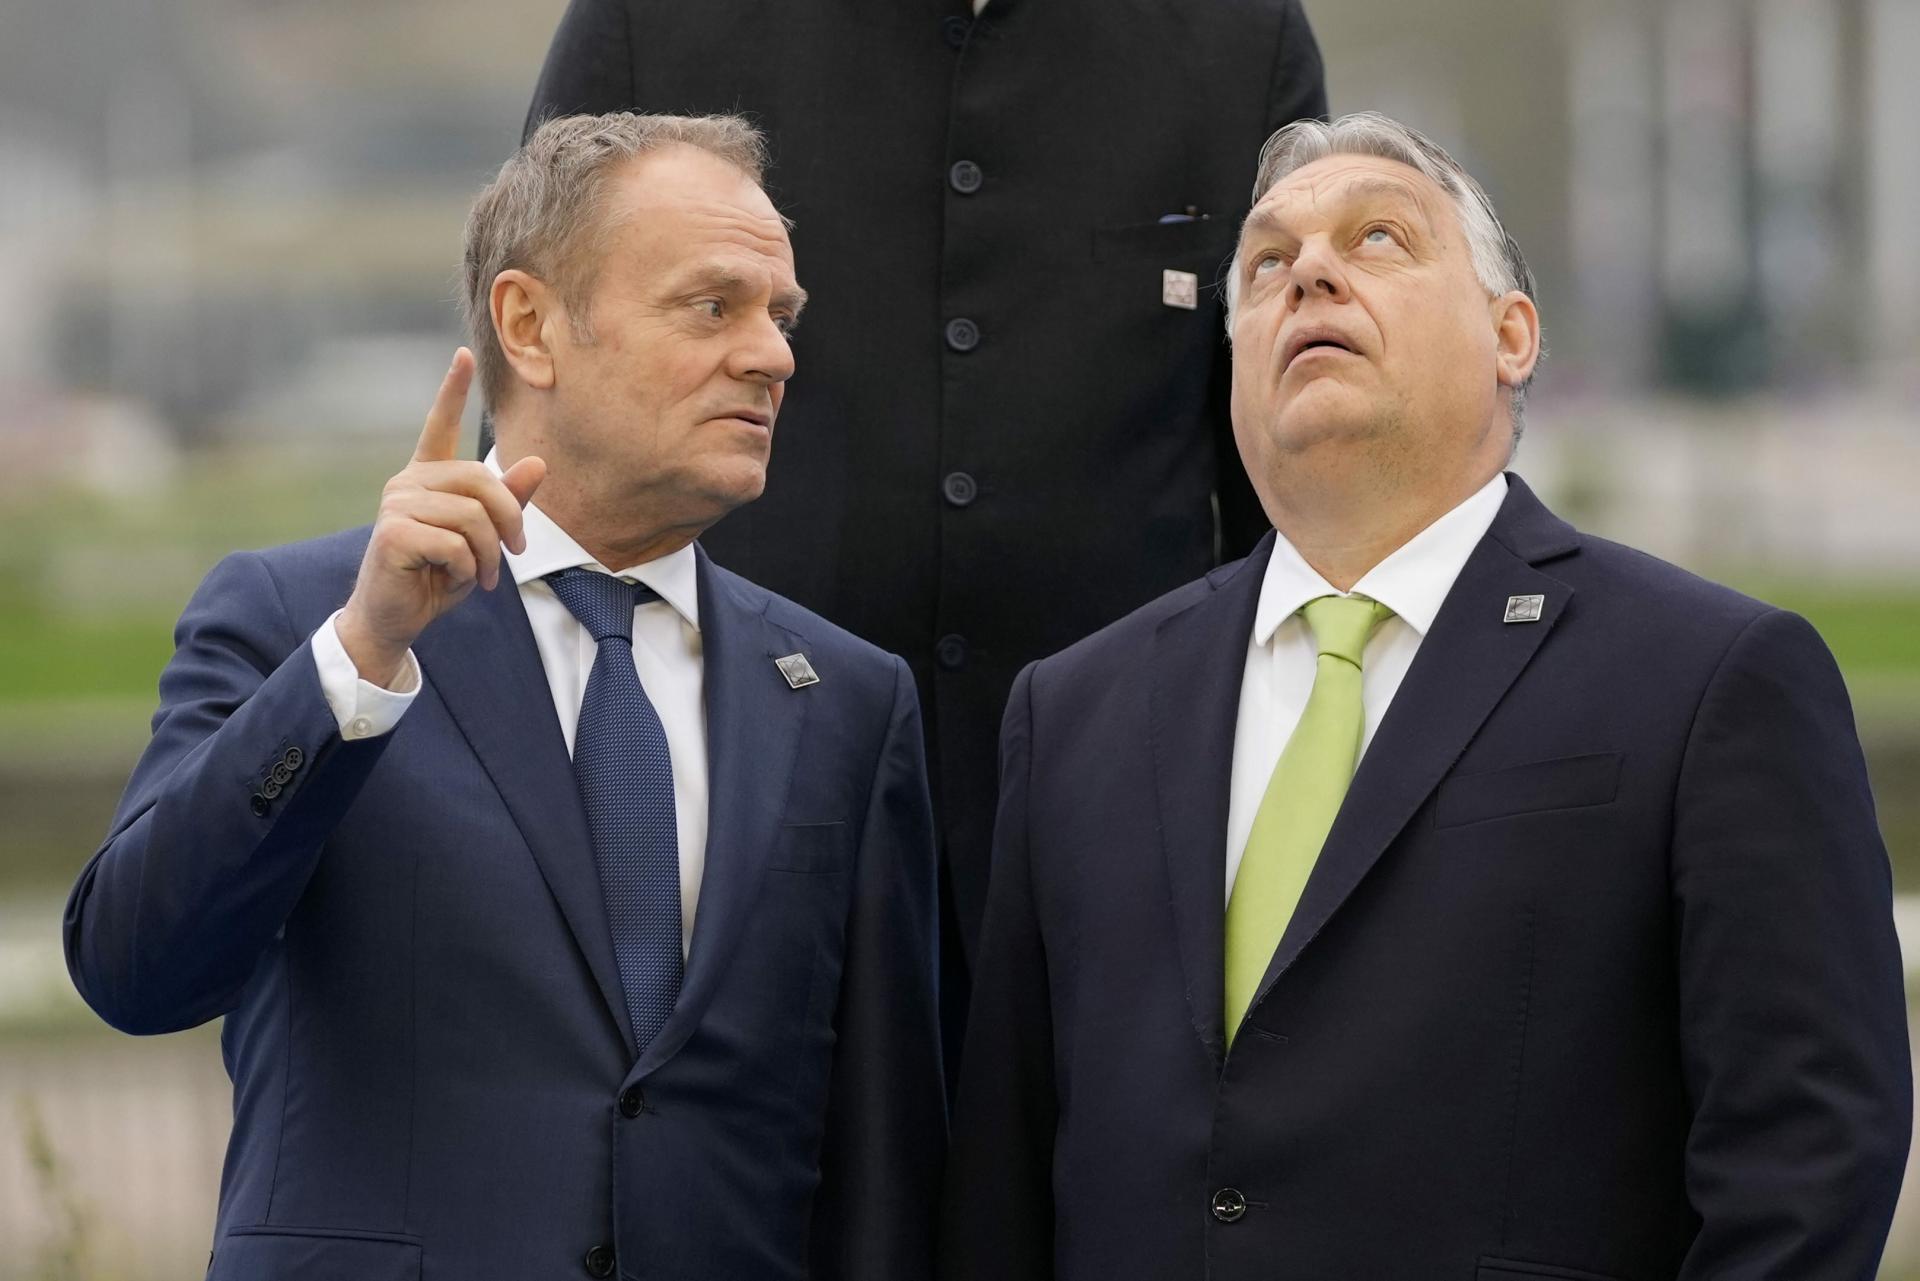 Otvorený konflikt Maďarska s Poľskom odhaľuje napätie v Európe. Už toho máme dosť, tvrdí Budapešť